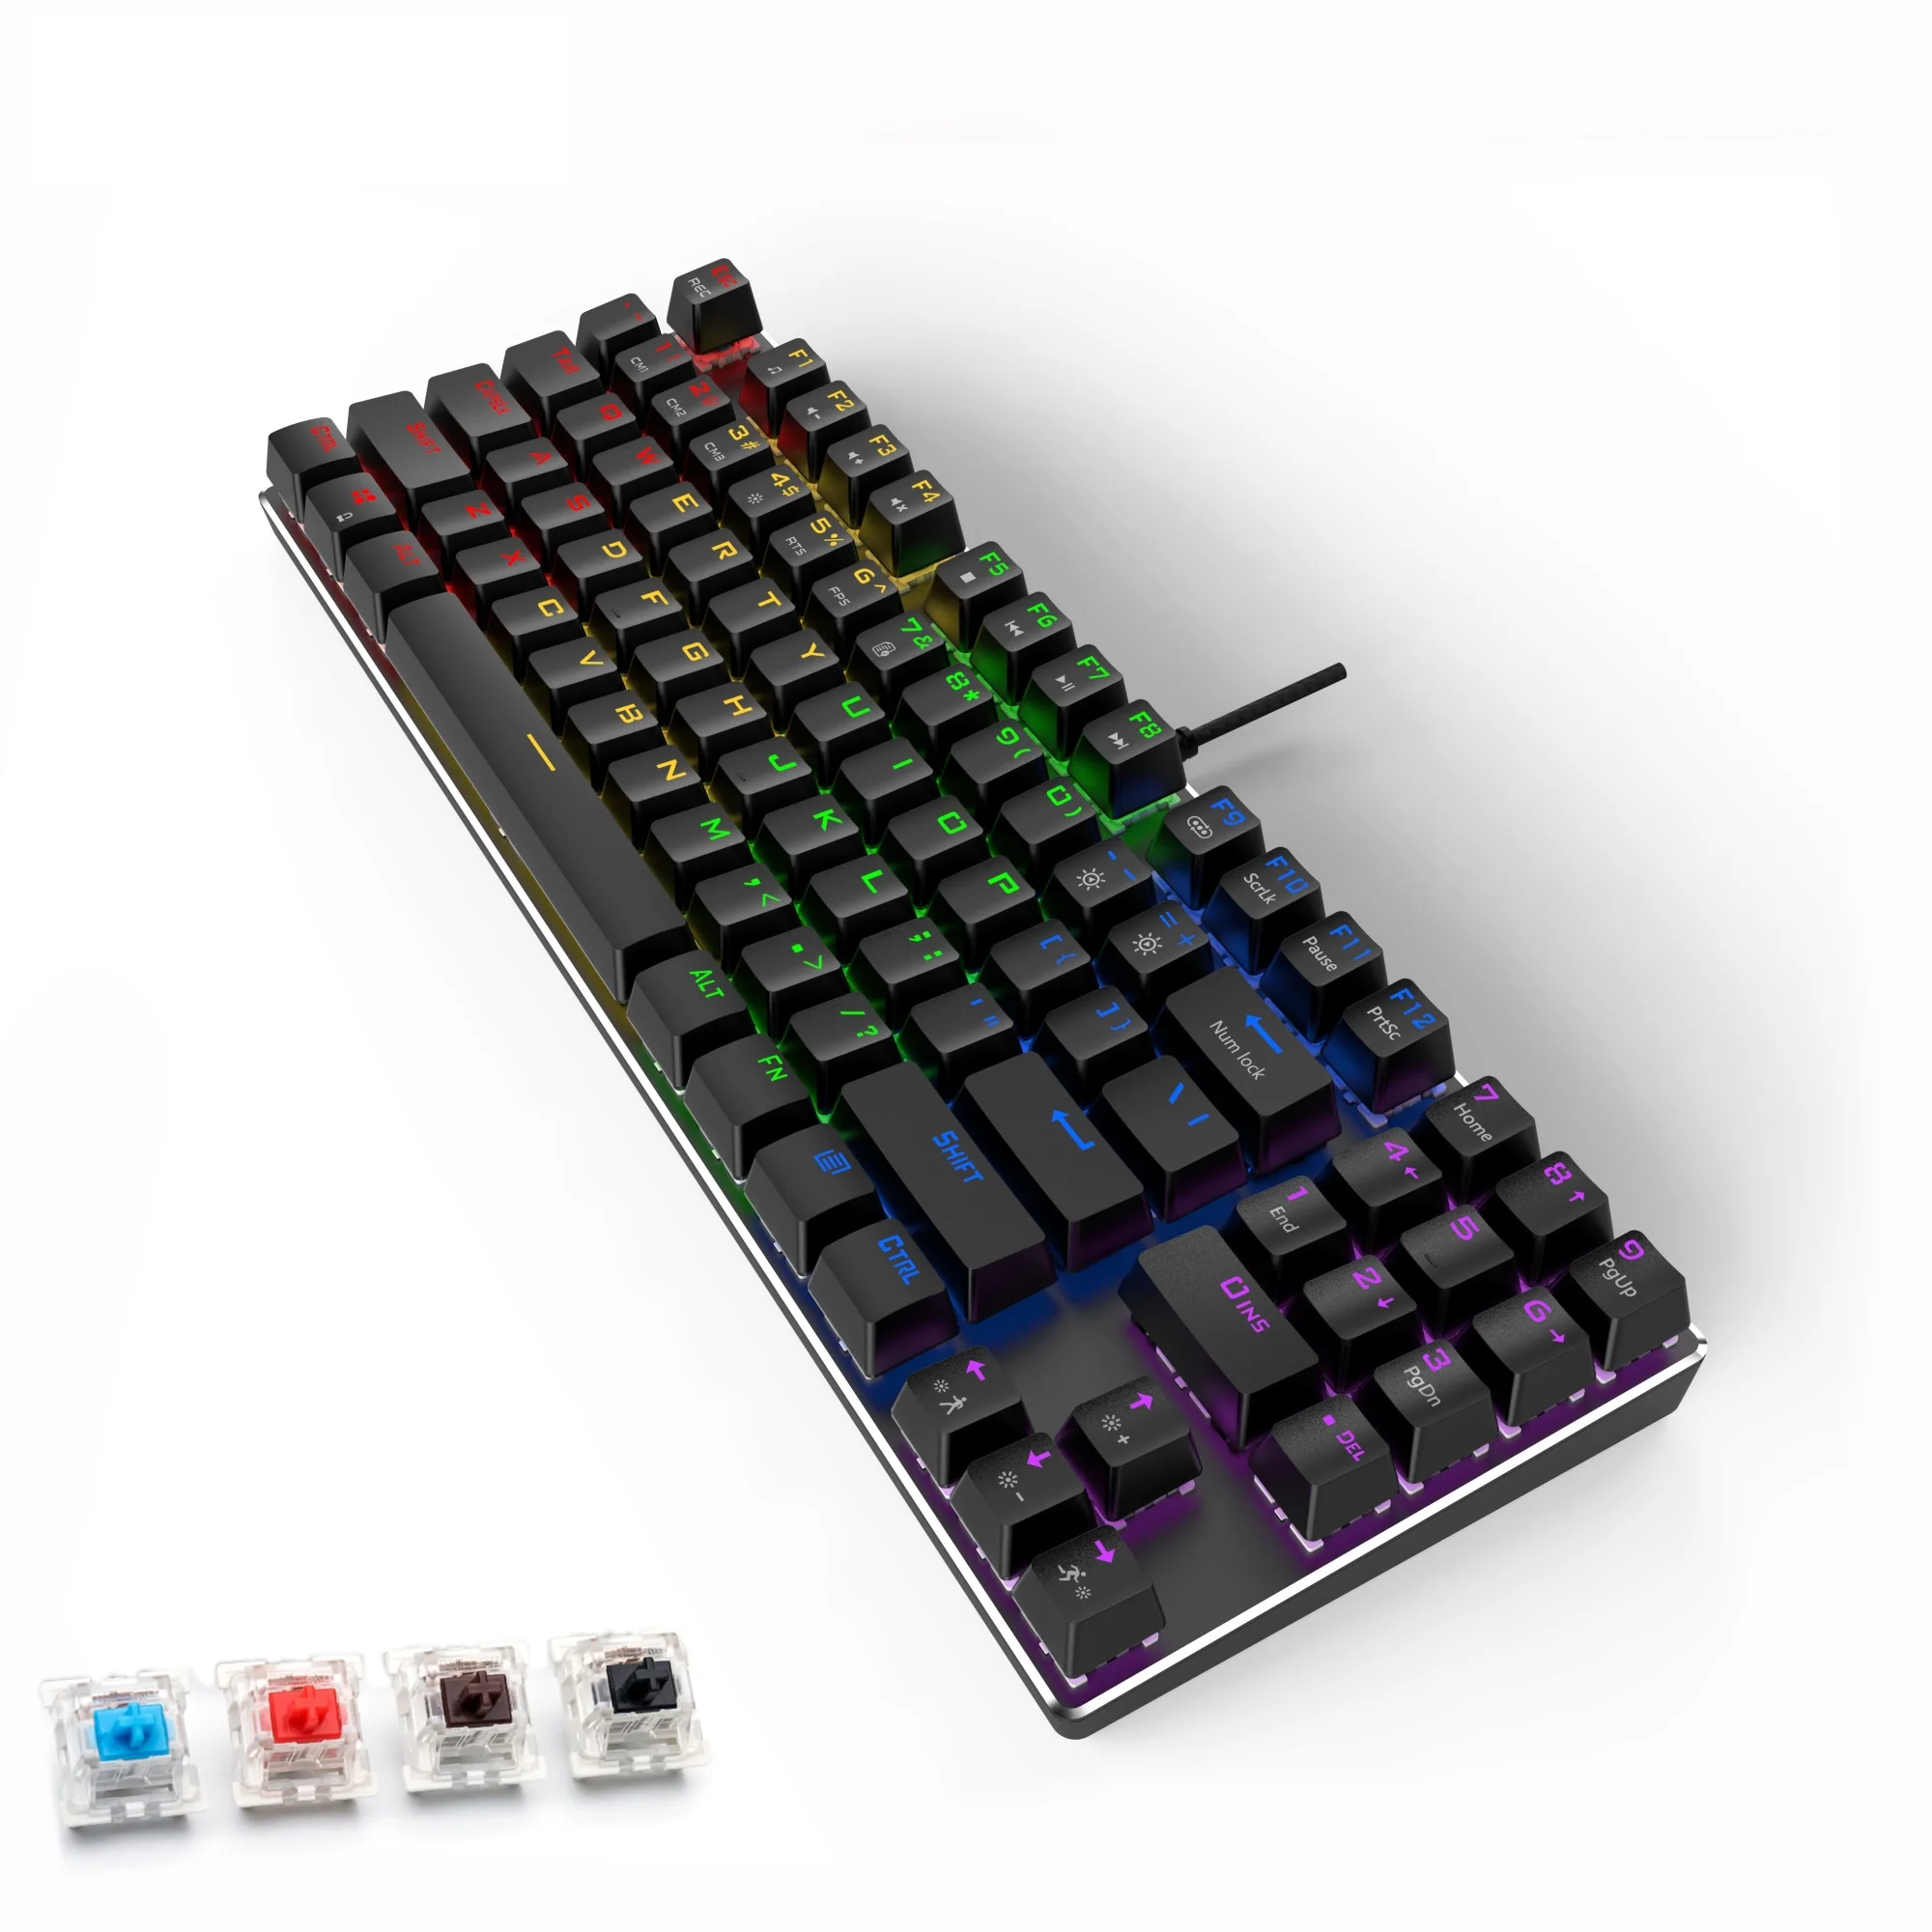 

Проводная игровая механическая клавиатура с подсветкой, 89 клавиш, защита от фиктивных нажатий, синие, красные, коричневые переключатели, кл...